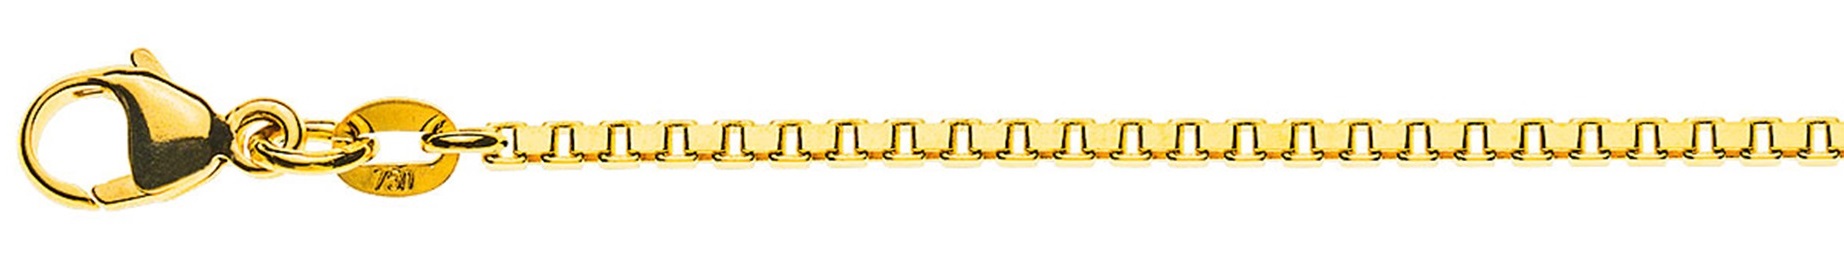 AURONOS Prestige Collier en or jaune 18K vénitien diamanté 55cm 1.6mm